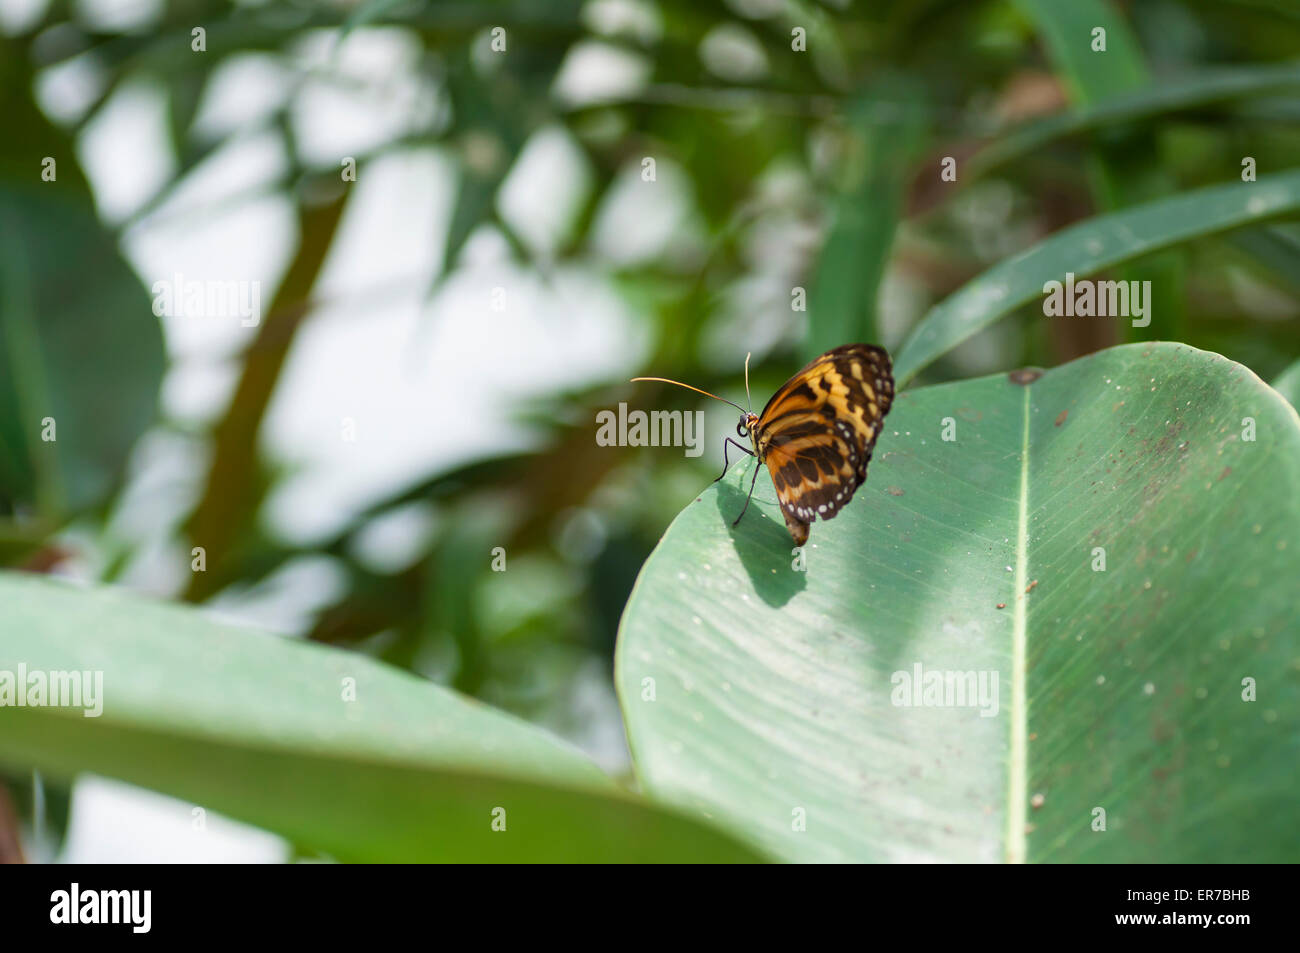 Danaus chrysippus de mariposas monarca africano. Adoptada el 30 de agosto de 2014 en el arco Bufferfly, Montegrotto Terme, Padua, Italia. Foto de stock